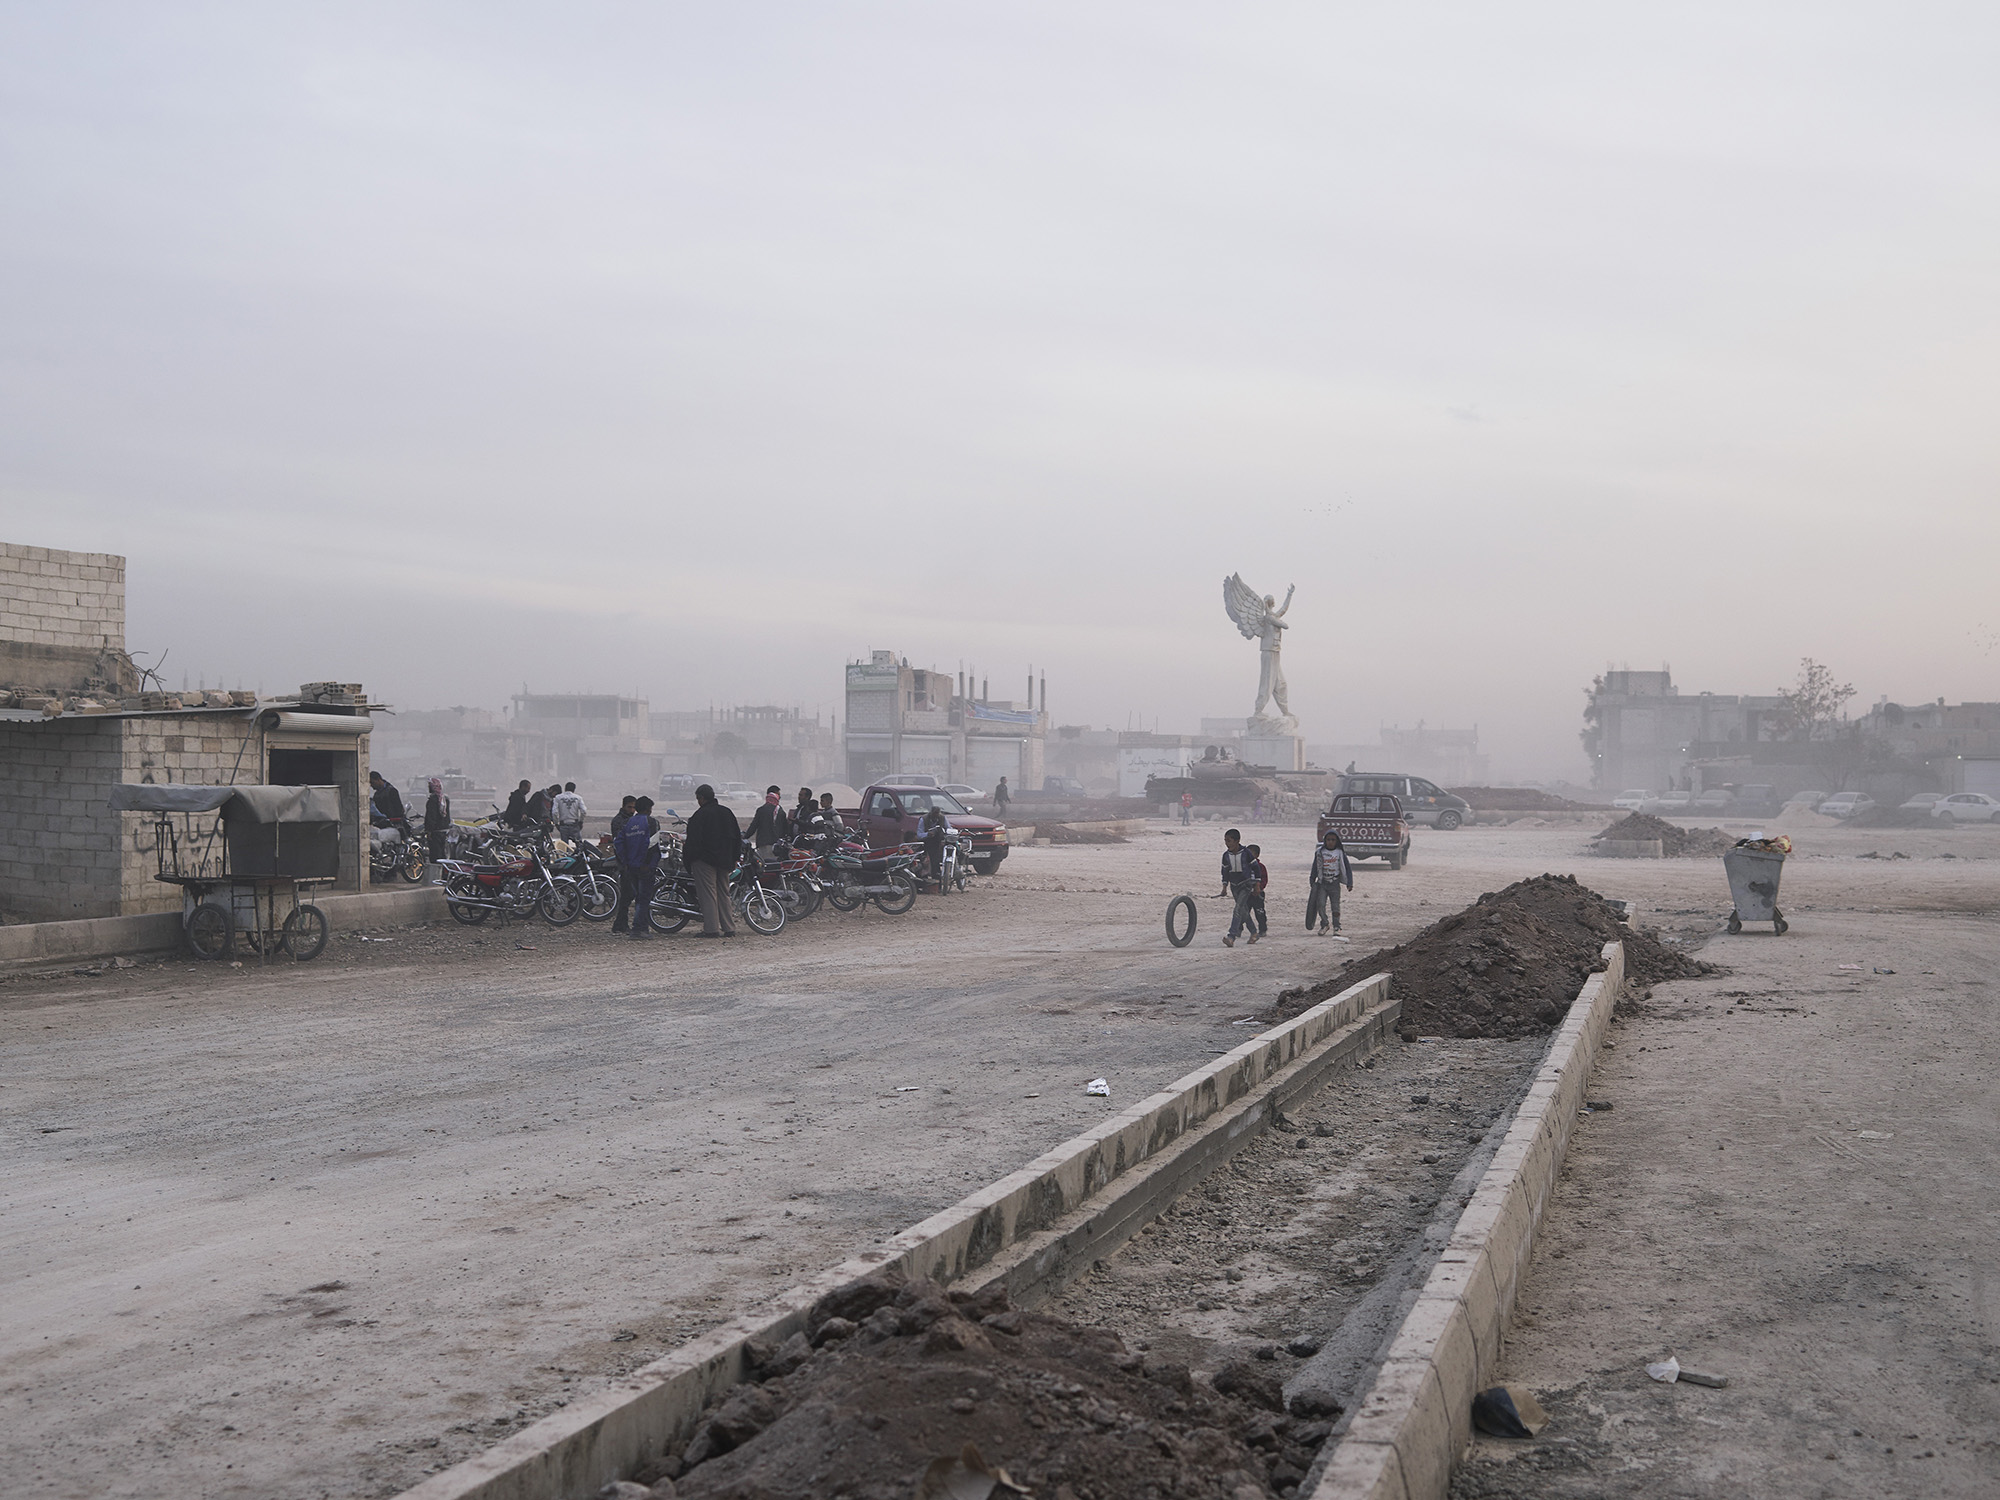 Joey L Kurdistan 002 ‘The Dusty Streets Of Kobane With YPJ Martyr Statue’